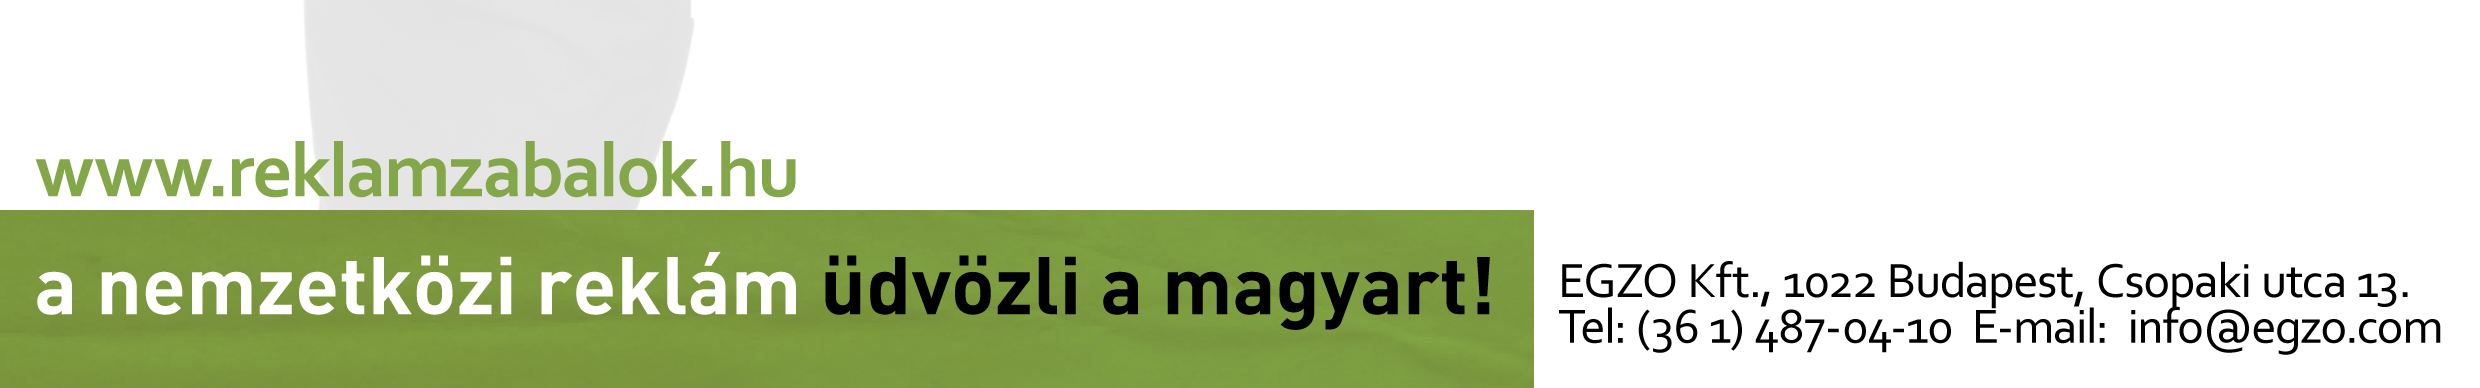 Az idei mottó: a nemzetközi reklám üdvözli a magyart.